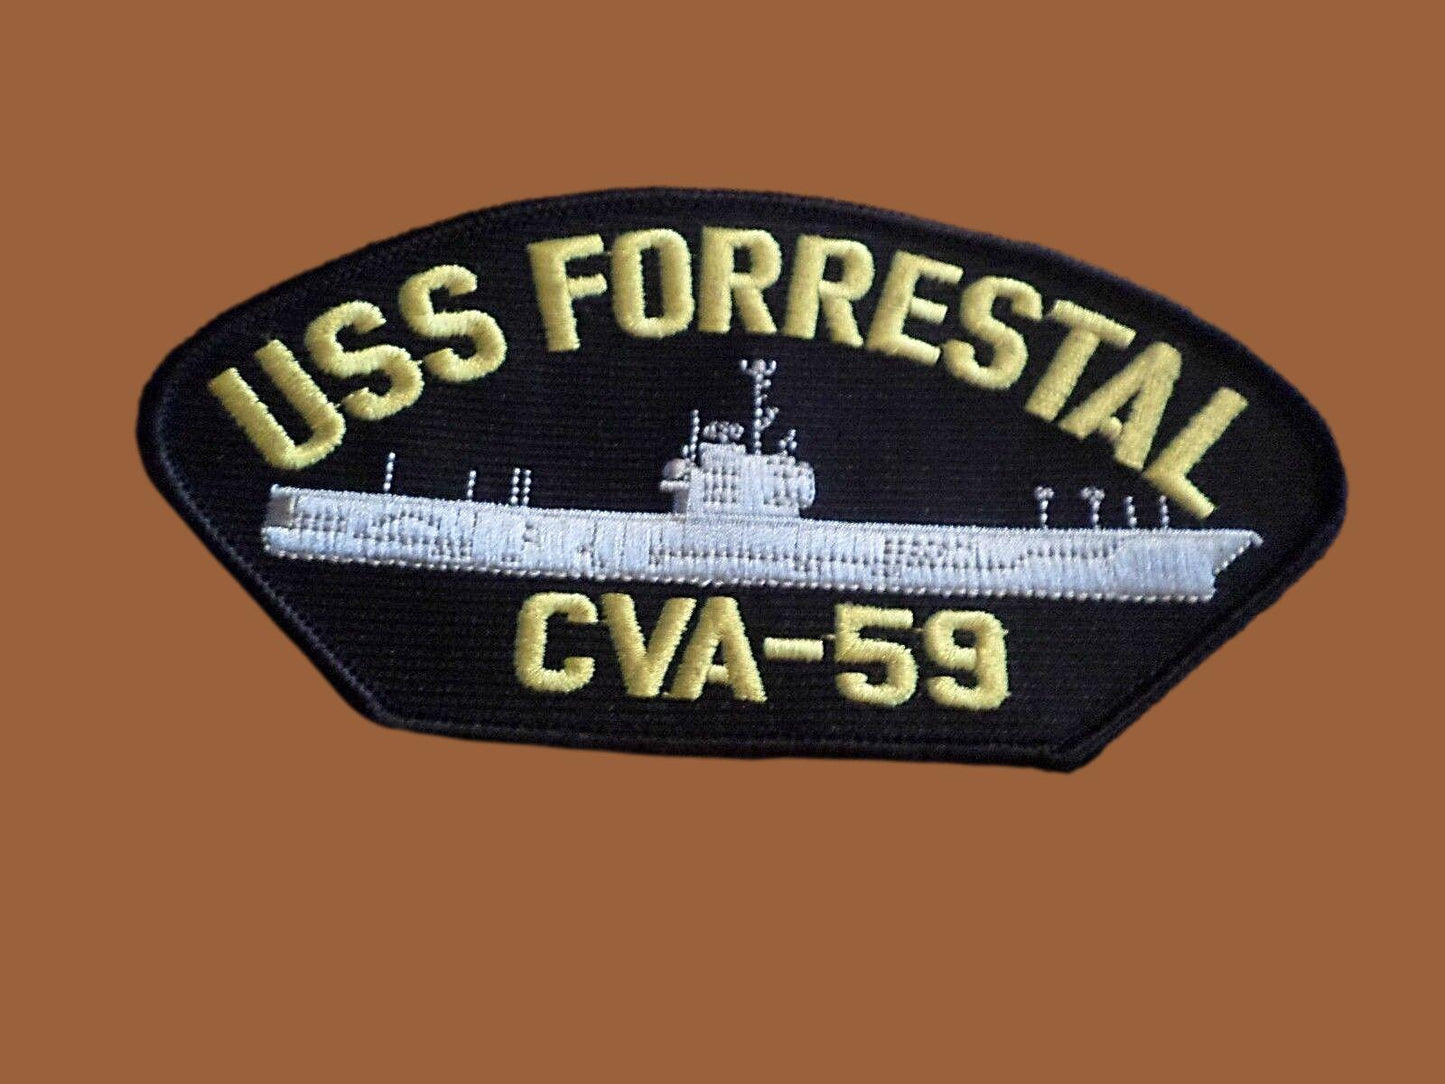 U.S NAVY SHIP HAT PATCH. USS FORRESTAL CVA-59 SHIP PATCH NAVY CARRIER U.S.A MADE